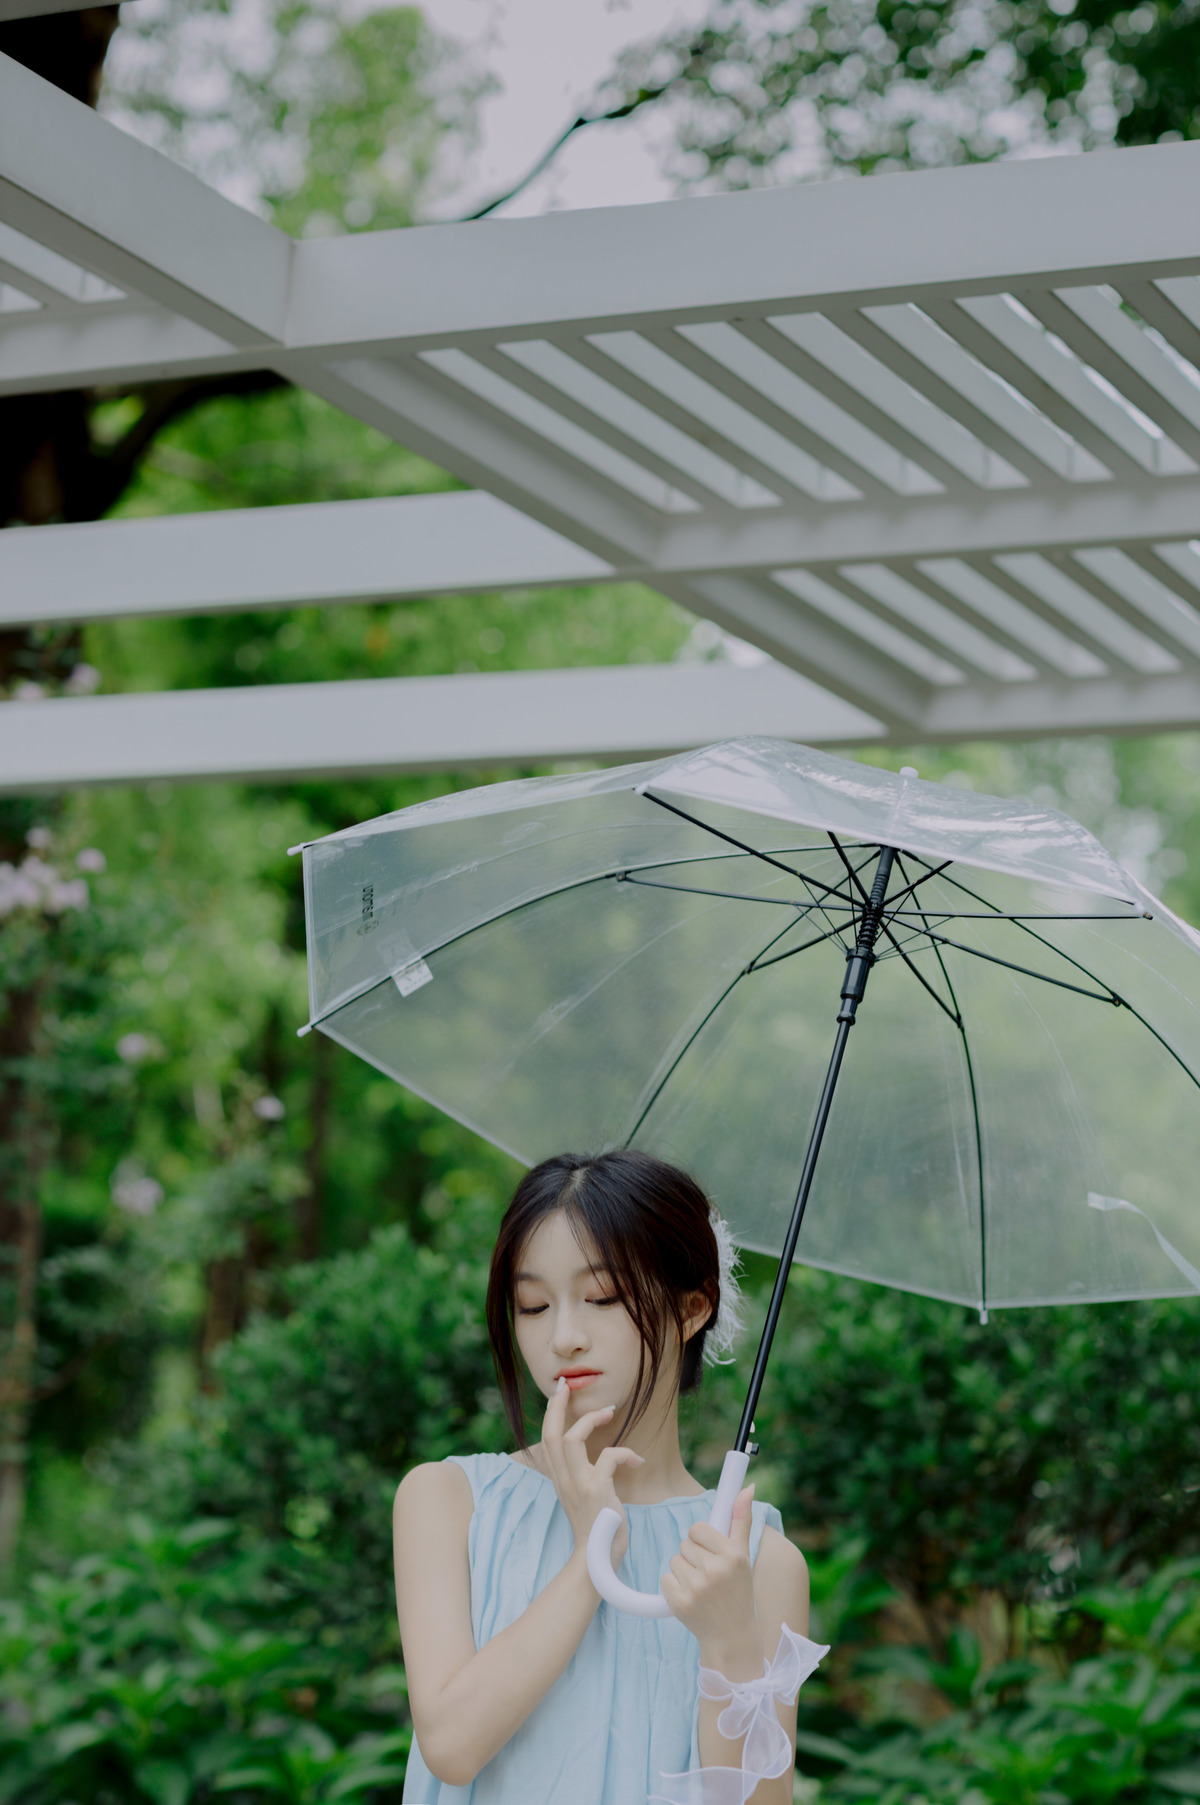 一位穿着蓝色连衣裙的年轻女子手持一把透明伞。